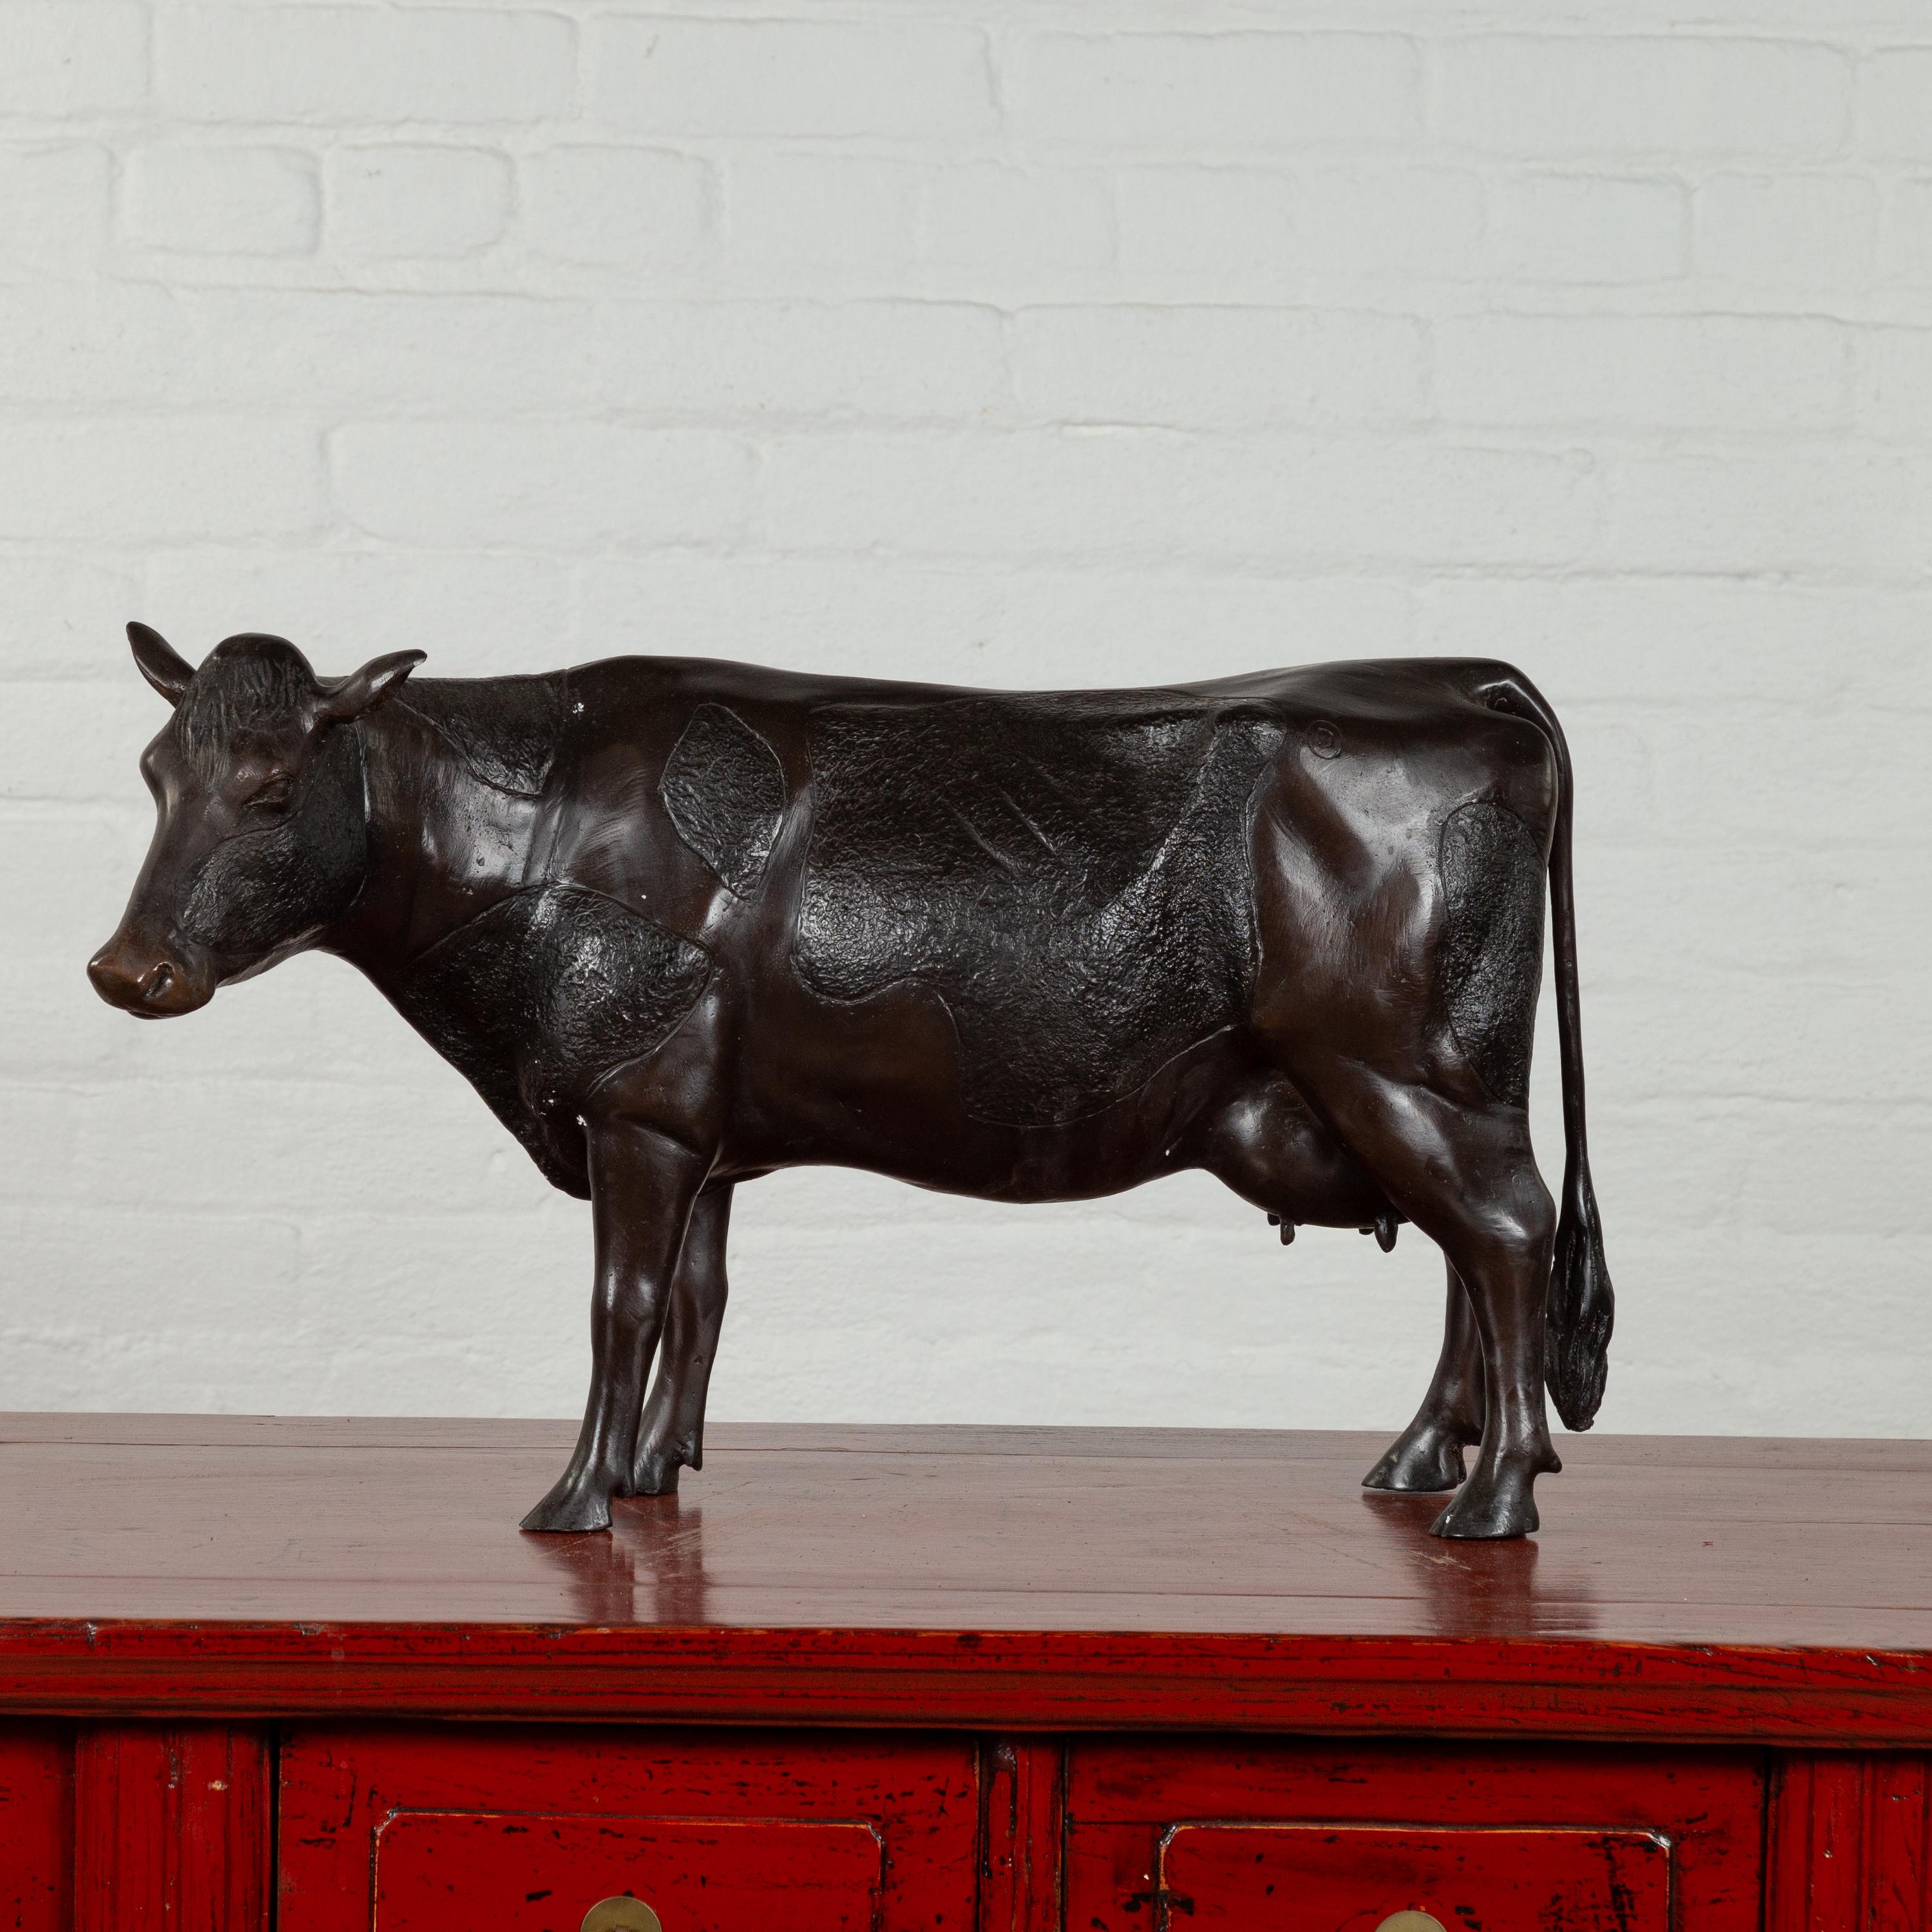 Sculpture contemporaine en bronze coulé, réalisée sur mesure, représentant une vache Holstein. Réalisée avec la technique traditionnelle de la cire perdue qui permet une grande précision dans les détails, cette sculpture en bronze représente une